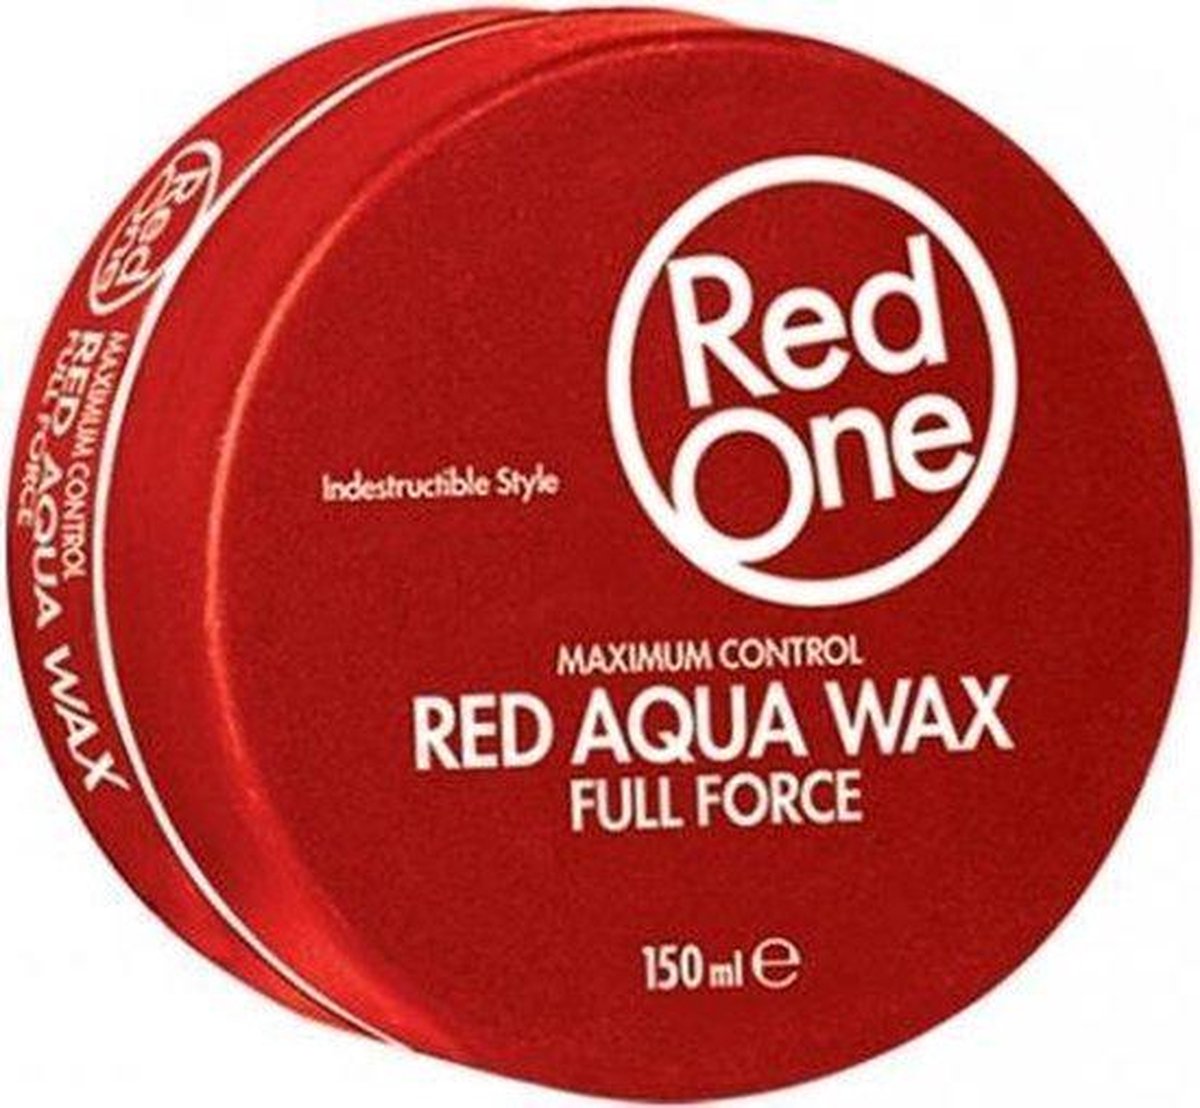 RedOne Red Aqua Haarwax - 150ml - 4 stuks - Red One